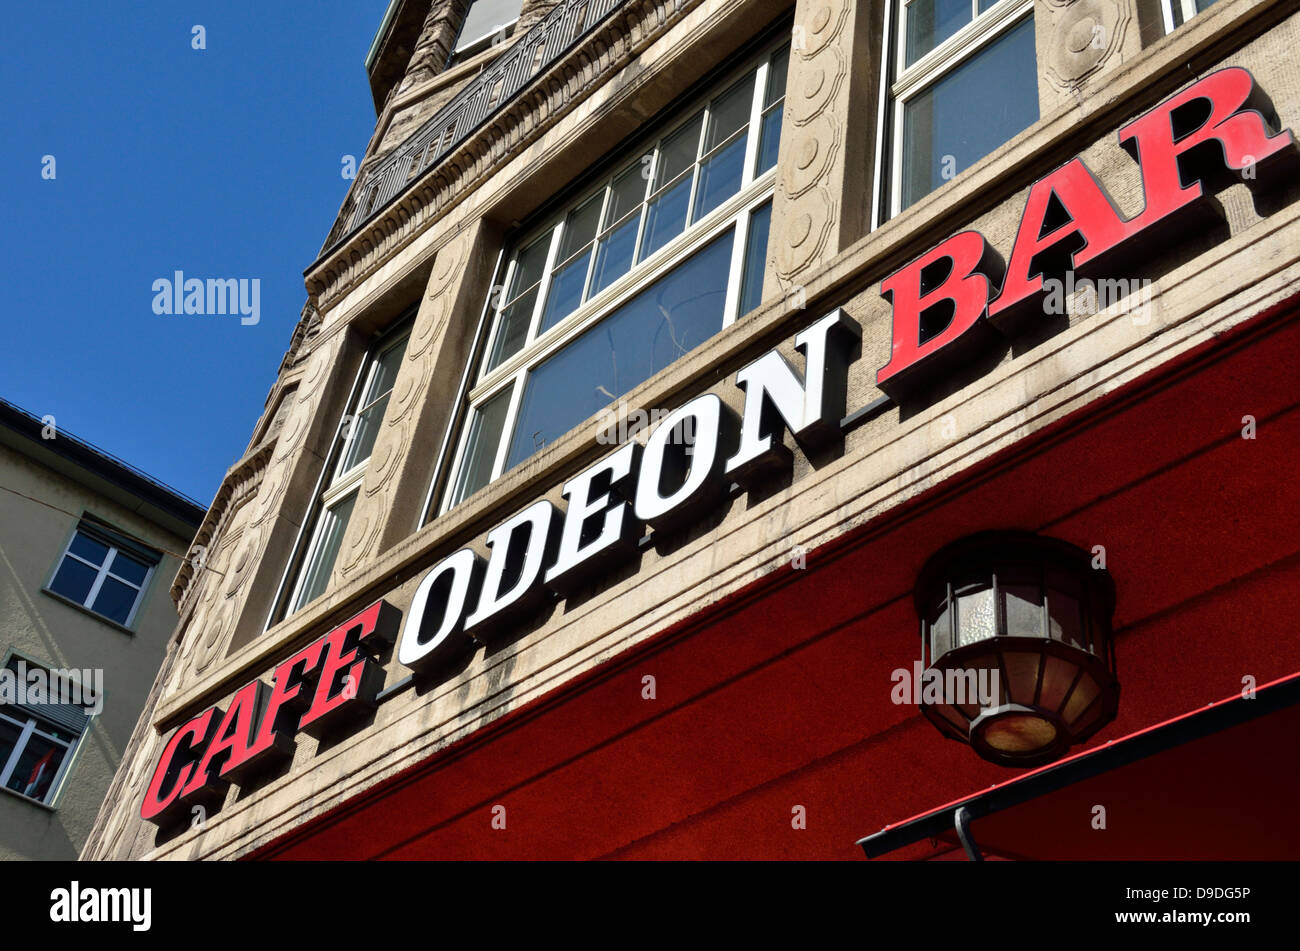 Cafe Bar Odeon in Limmatquai, Zurich, Switzerland. Stock Photo